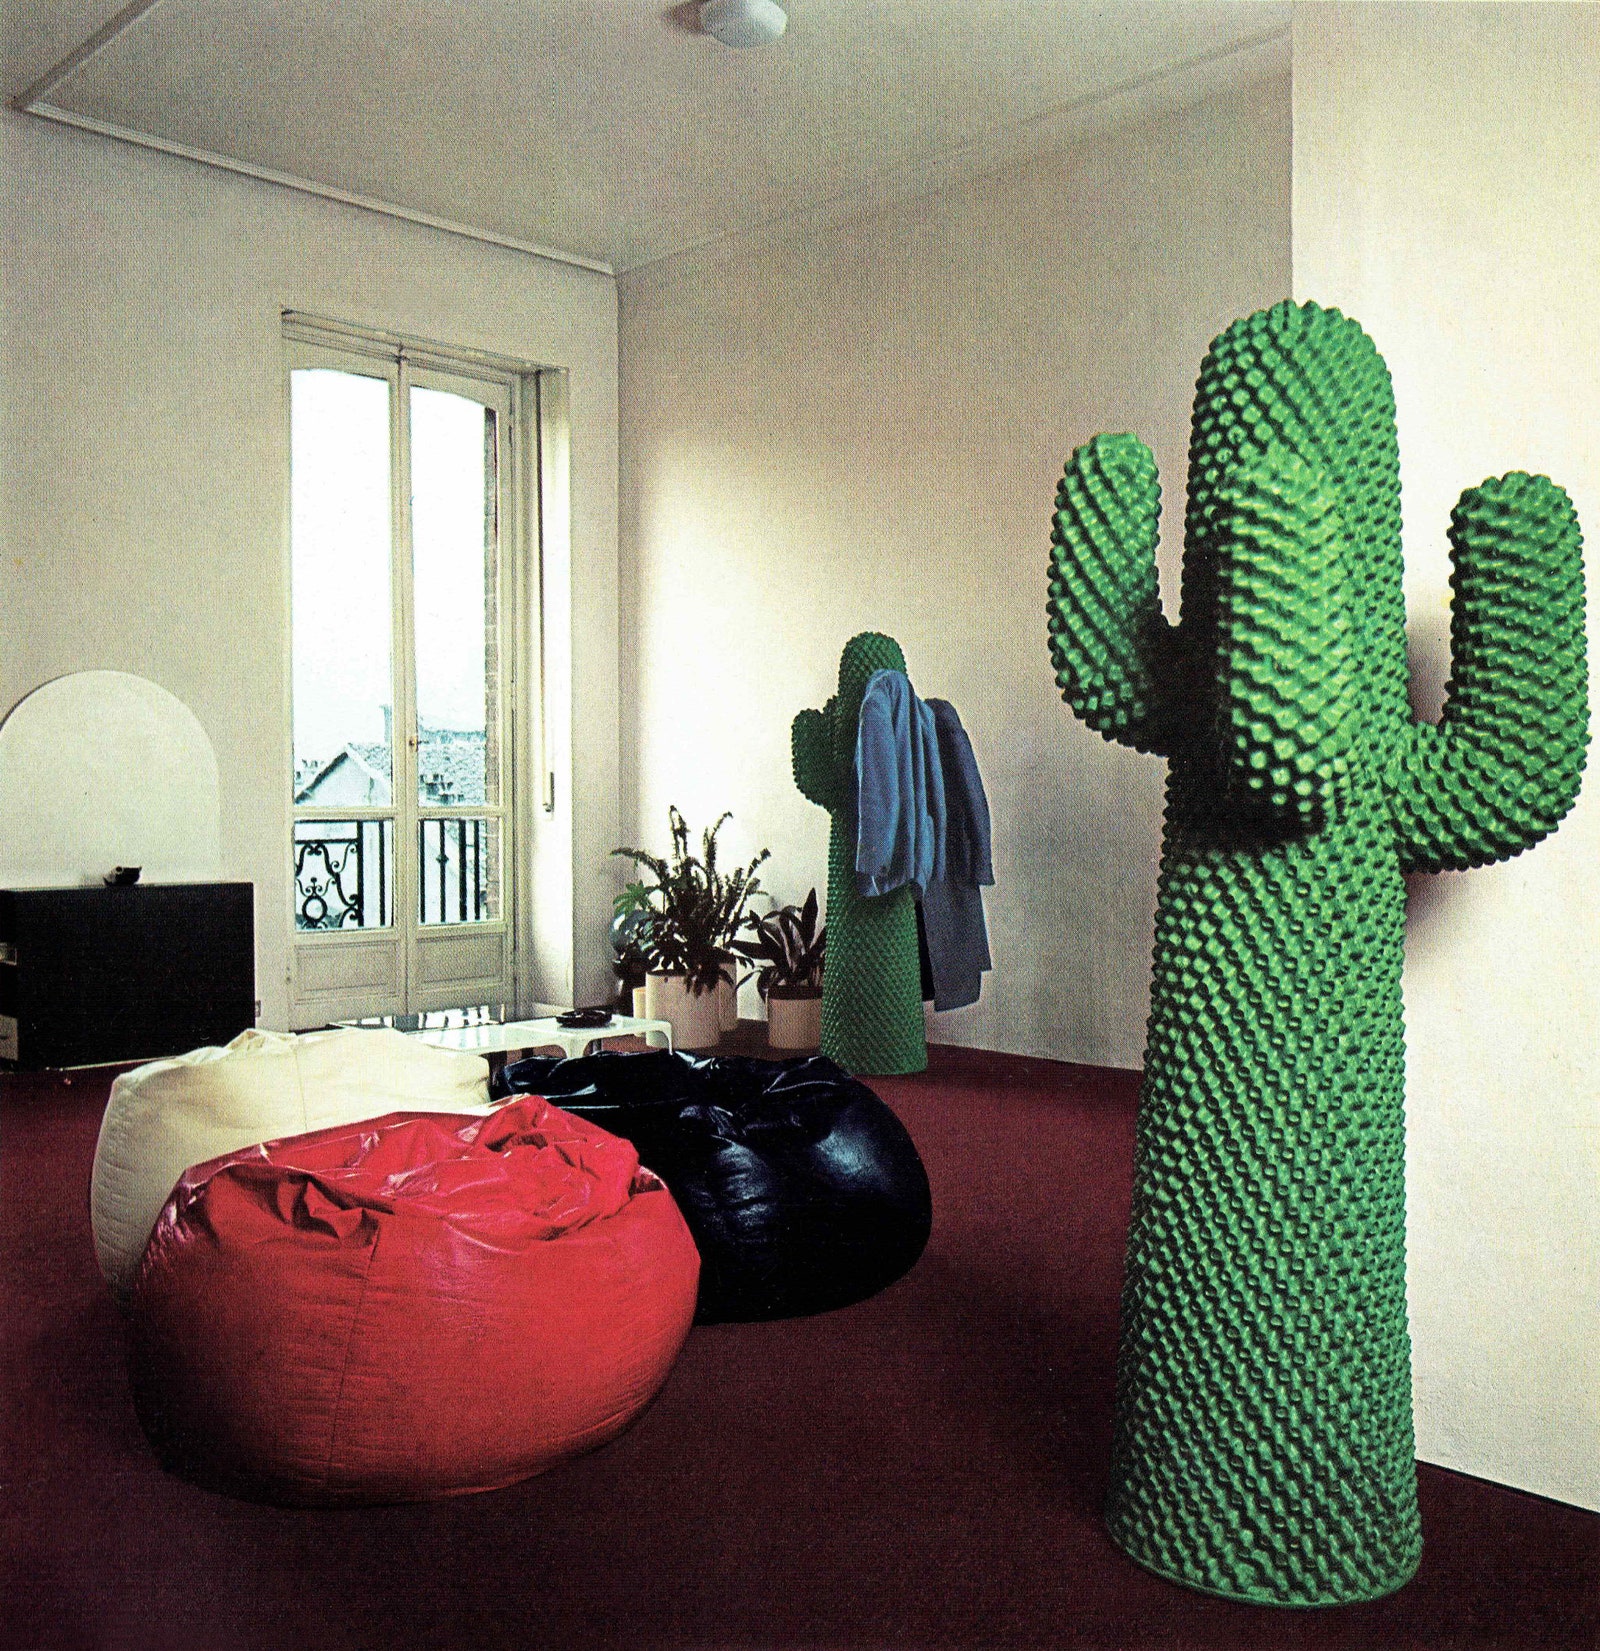 Gufram Cactus от дизайнеров Guido Drocco and Franco Mello 1972. © Gufram.